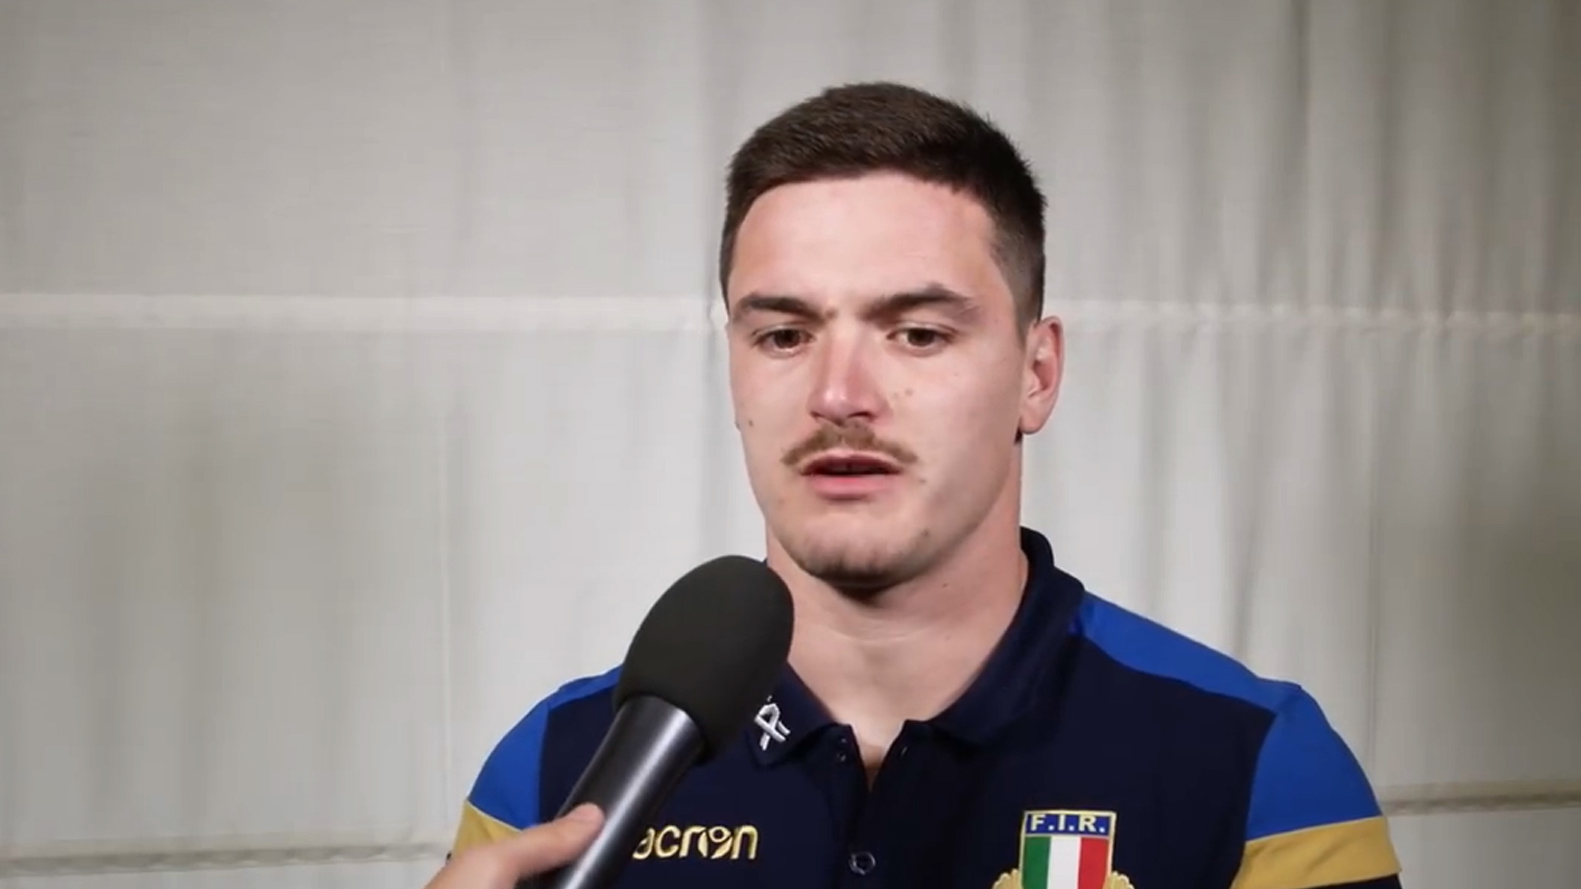 Rugby, il sannita Canna: “La mia ‘cazzimma’ a servizio dell’Italia”